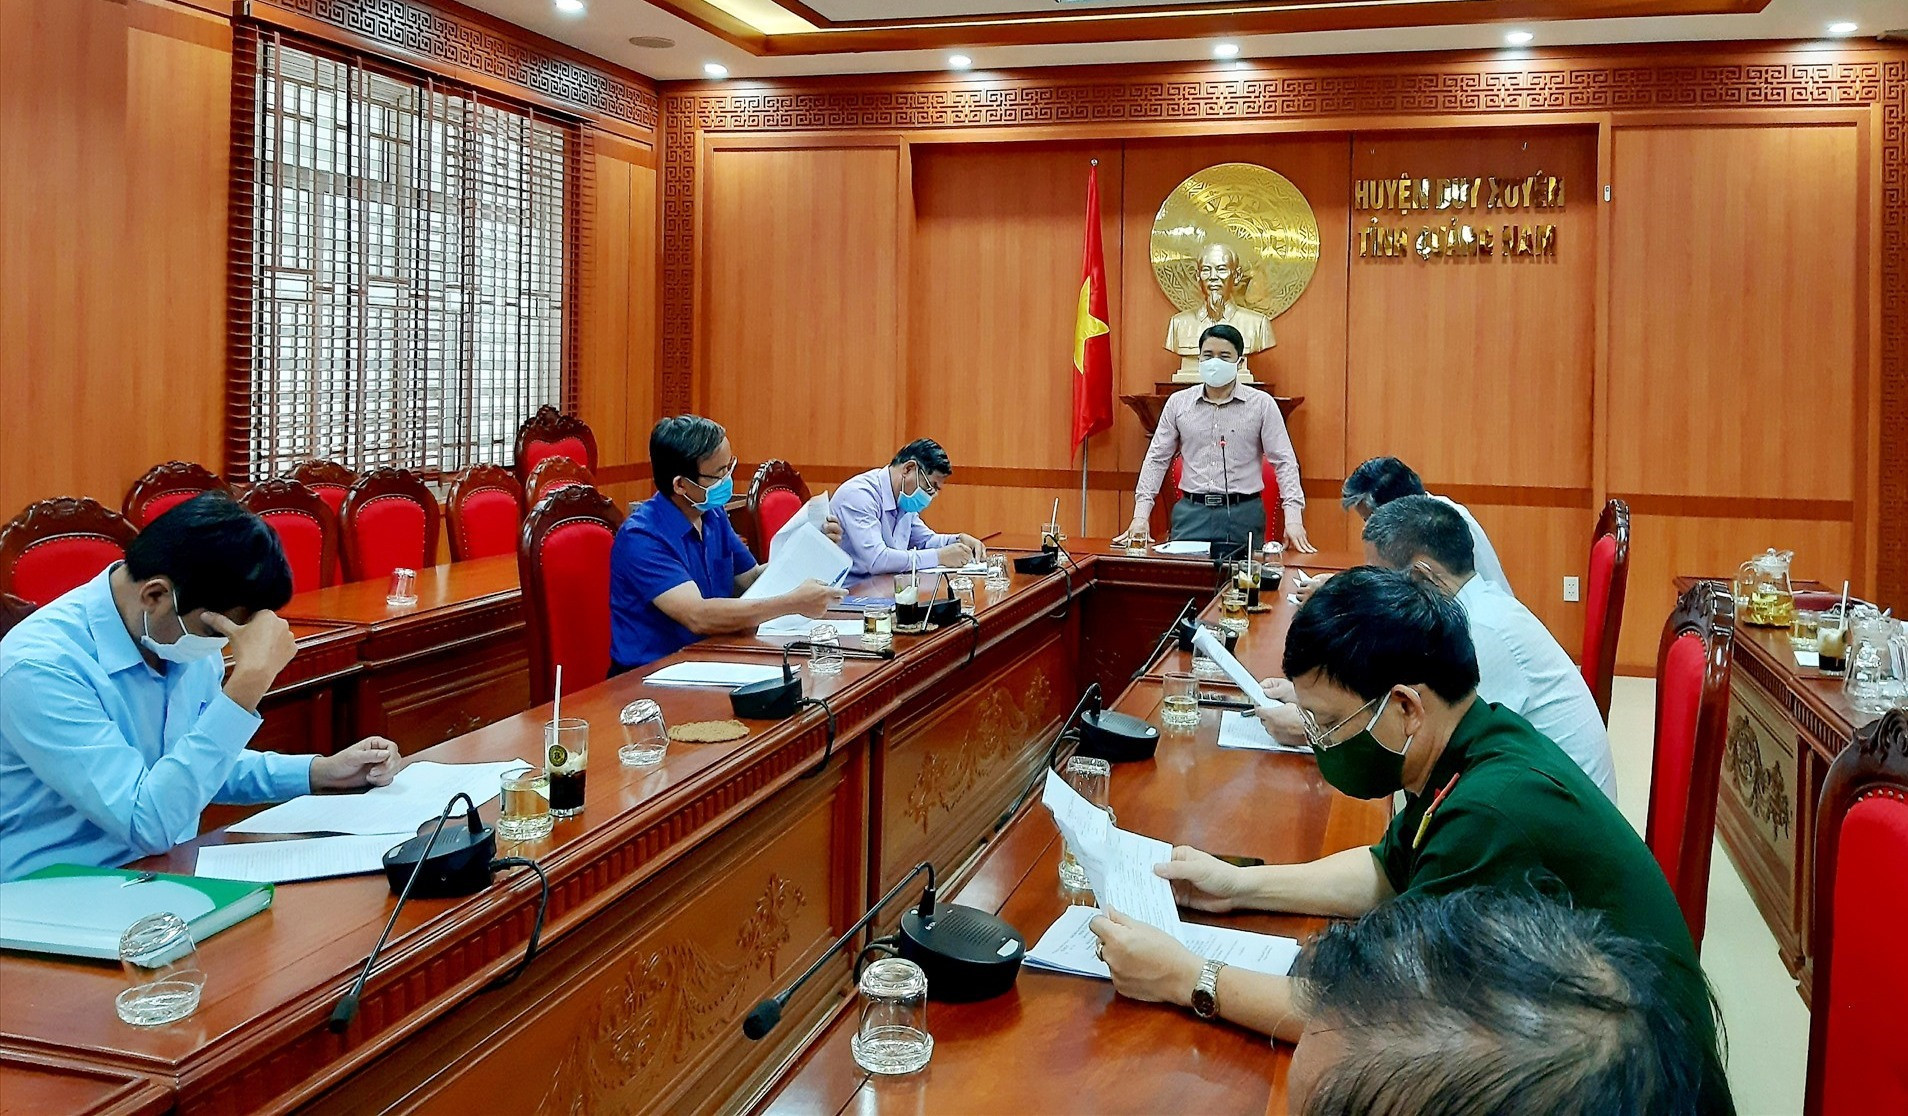 Phó Chủ tịch UBND tỉnh Trần Văn Tân phát biểu chỉ đạo tại cuộc làm việc với lãnh đạo huyện Duy Xuyên. Ảnh: N.P